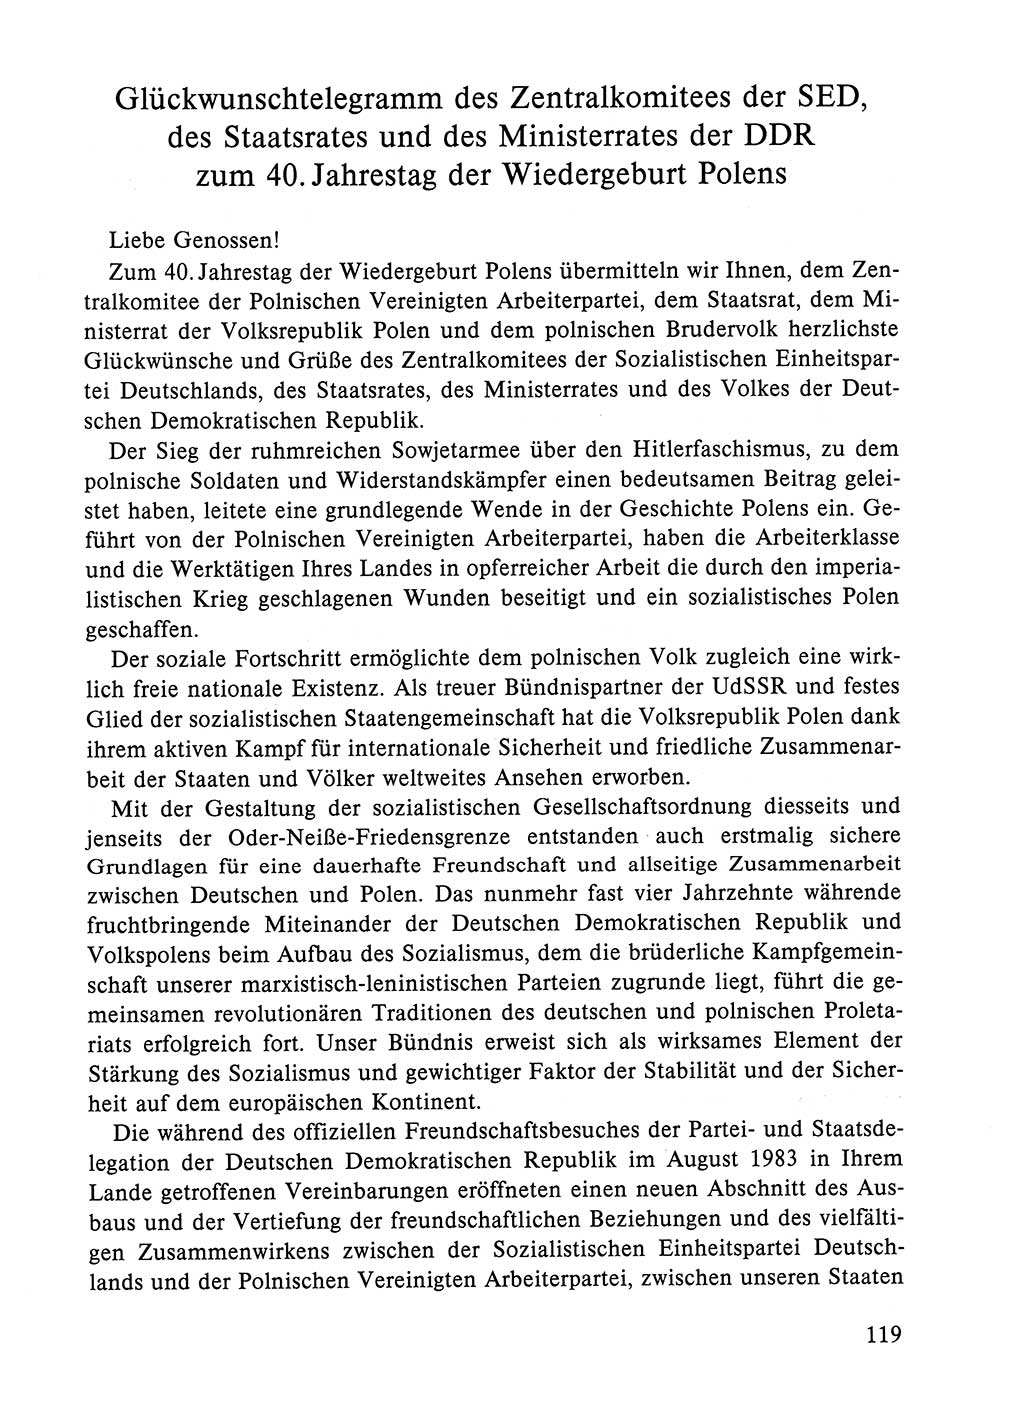 Dokumente der Sozialistischen Einheitspartei Deutschlands (SED) [Deutsche Demokratische Republik (DDR)] 1984-1985, Seite 308 (Dok. SED DDR 1984-1985, S. 308)